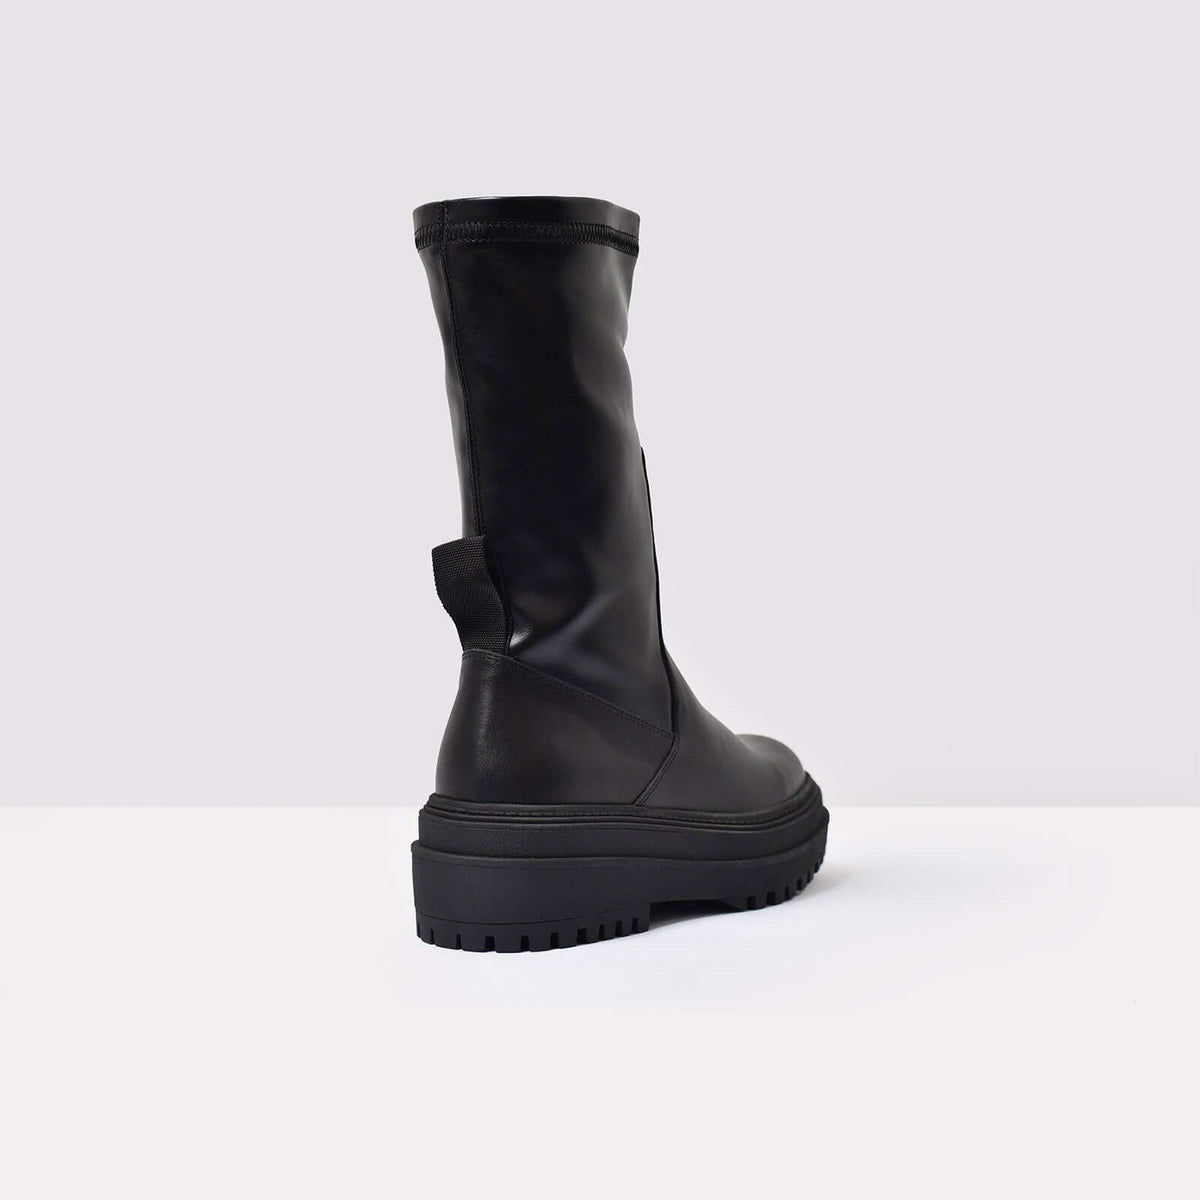 Aldo Women's Boots Elielia (Black) – ALDO UK